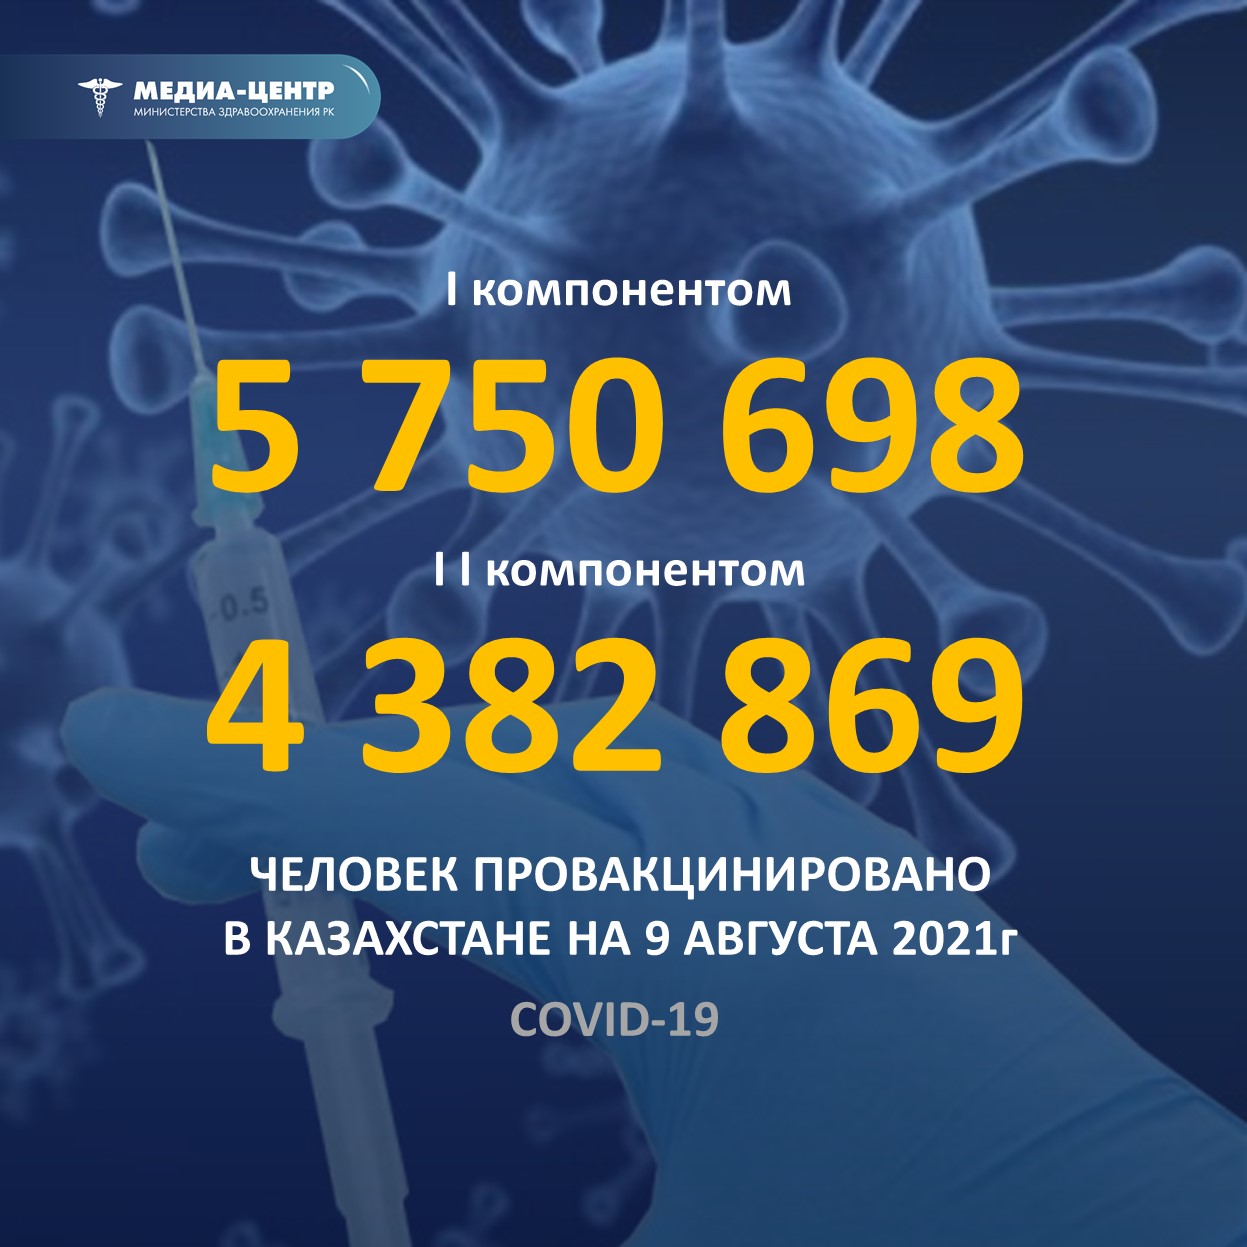 I компонентом 5 750 698 человек провакцинировано в Казахстане на 9 августа 2021 г, II компонентом 4 382 869 человек.